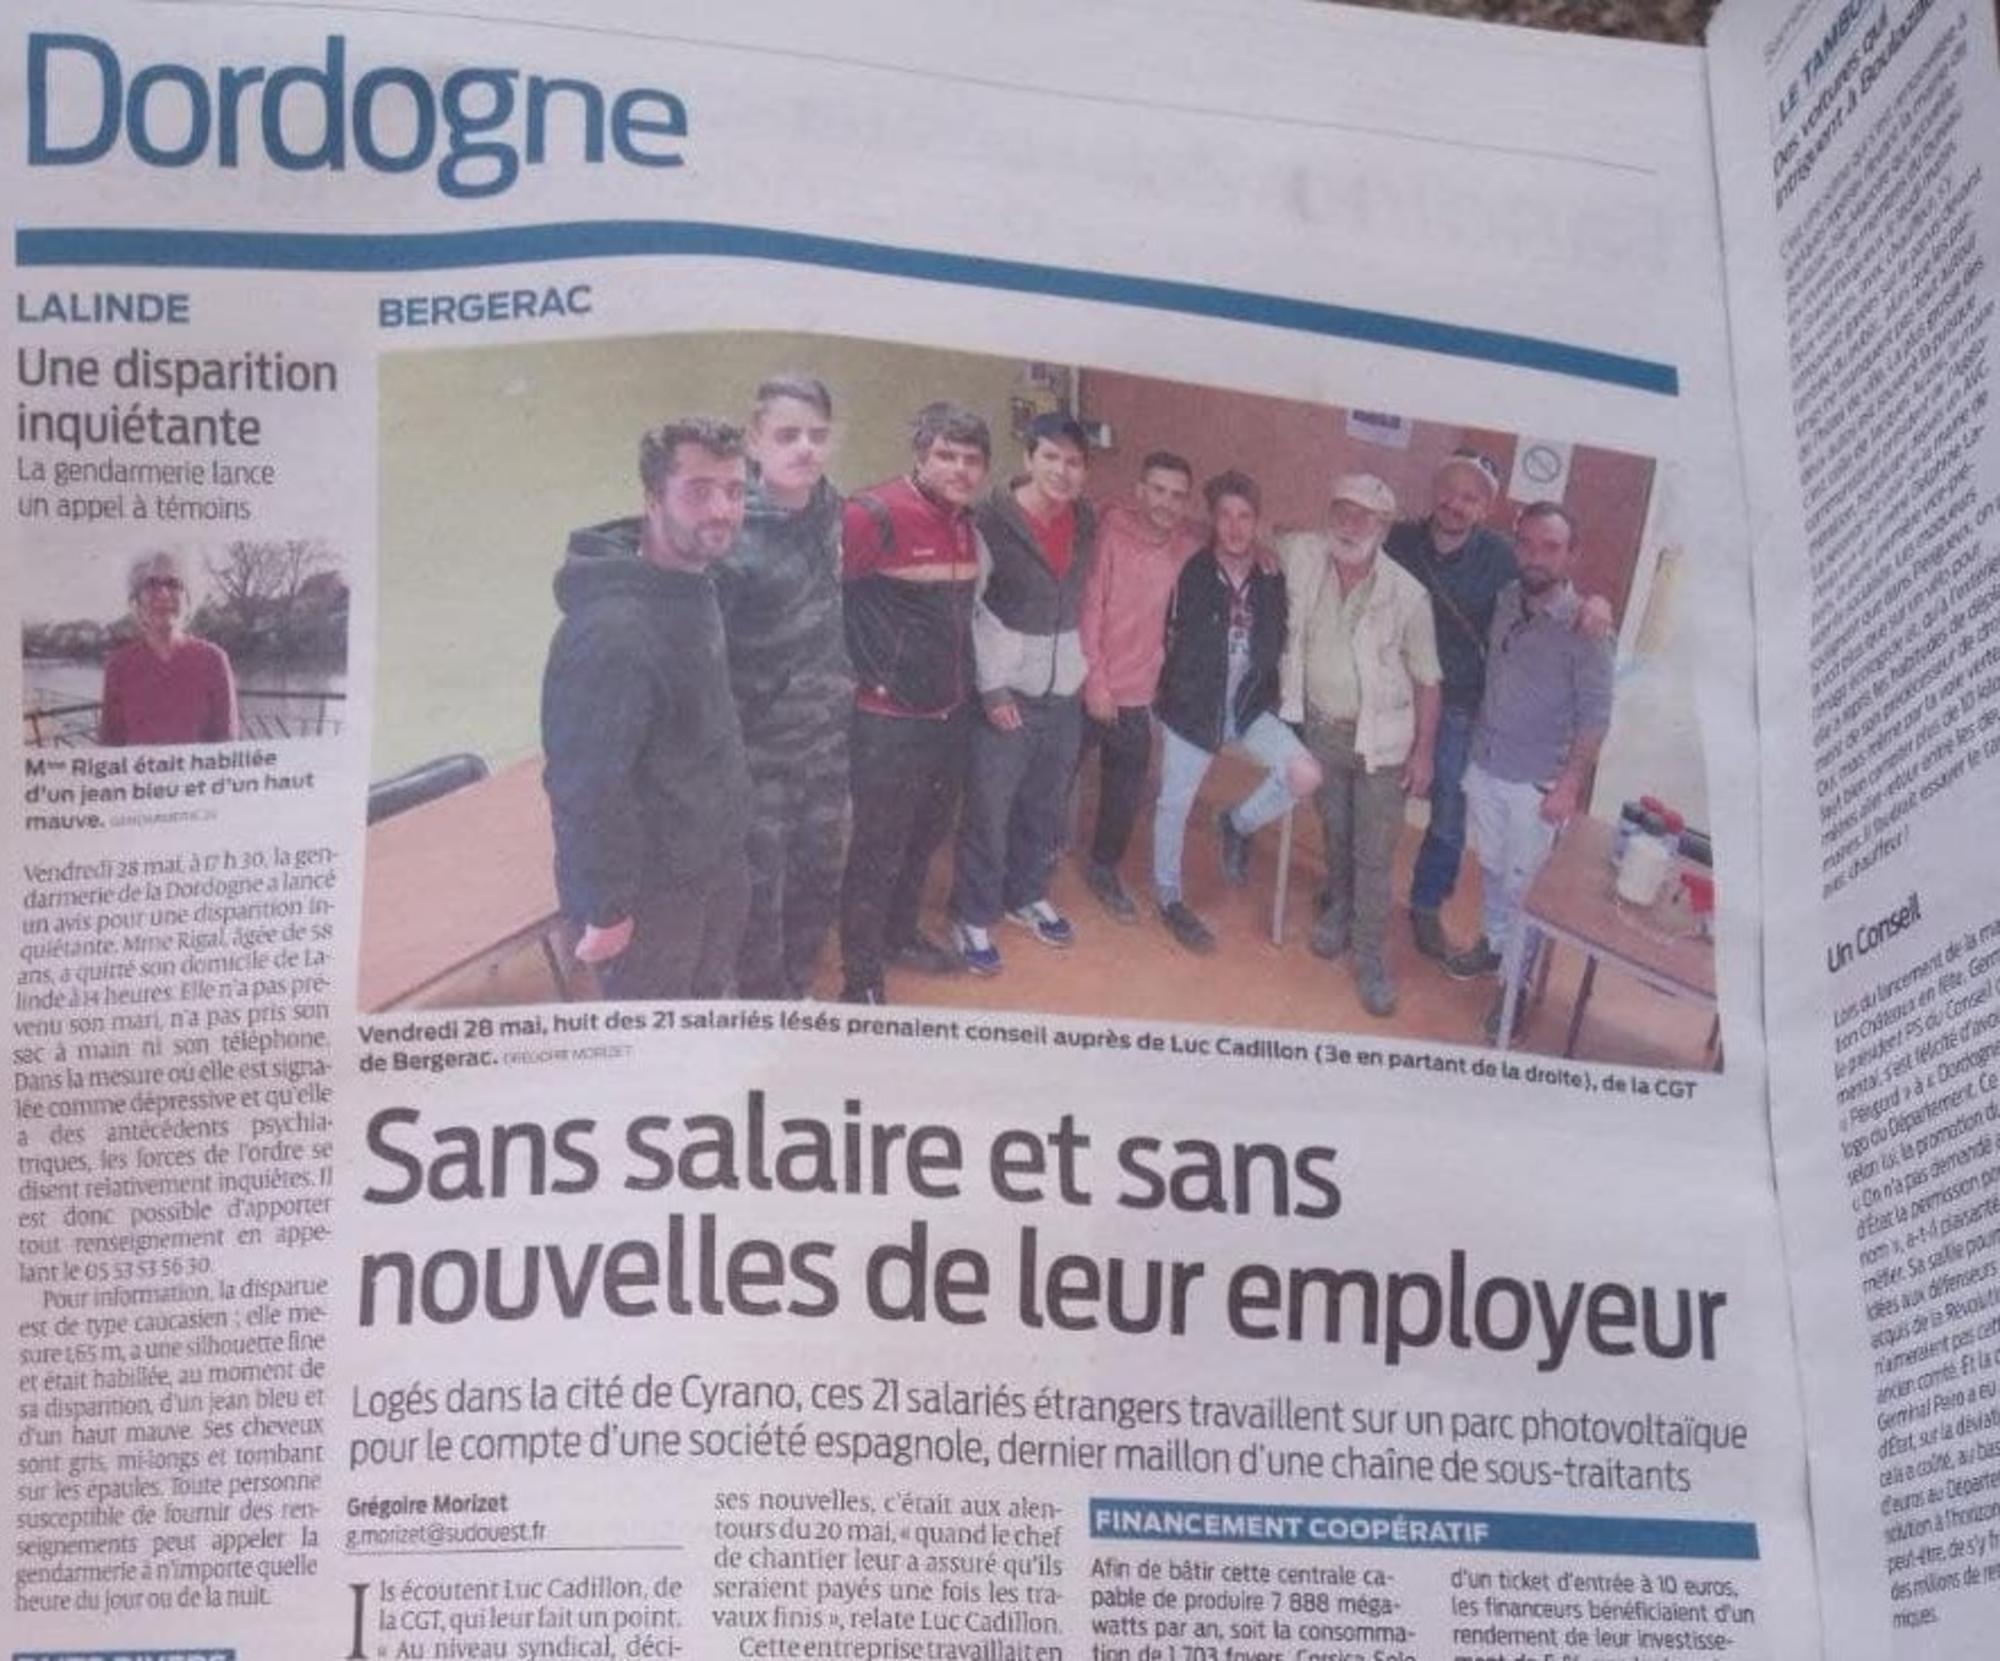 Trabajadores Francia extremadura 7